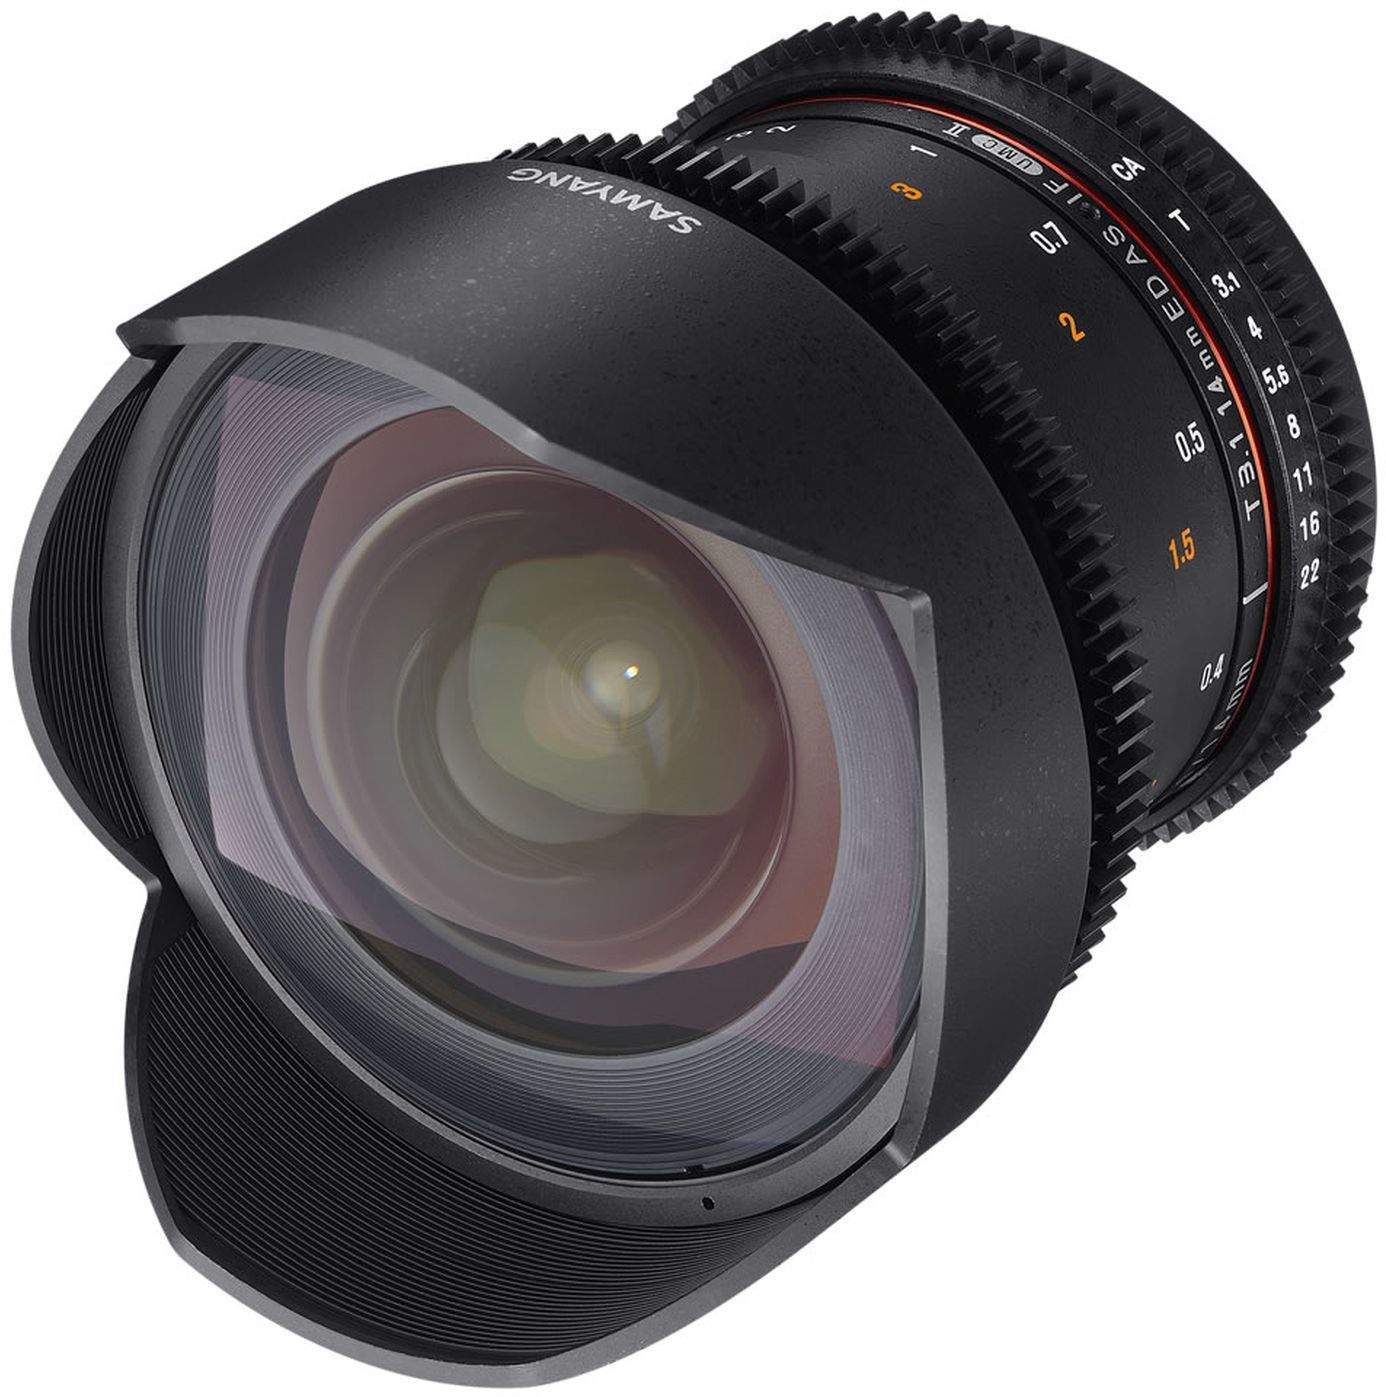 Samyang 14mm T3.1 UMC II Nikon Full Frame VDSLR/Cine Lens EX DEMO